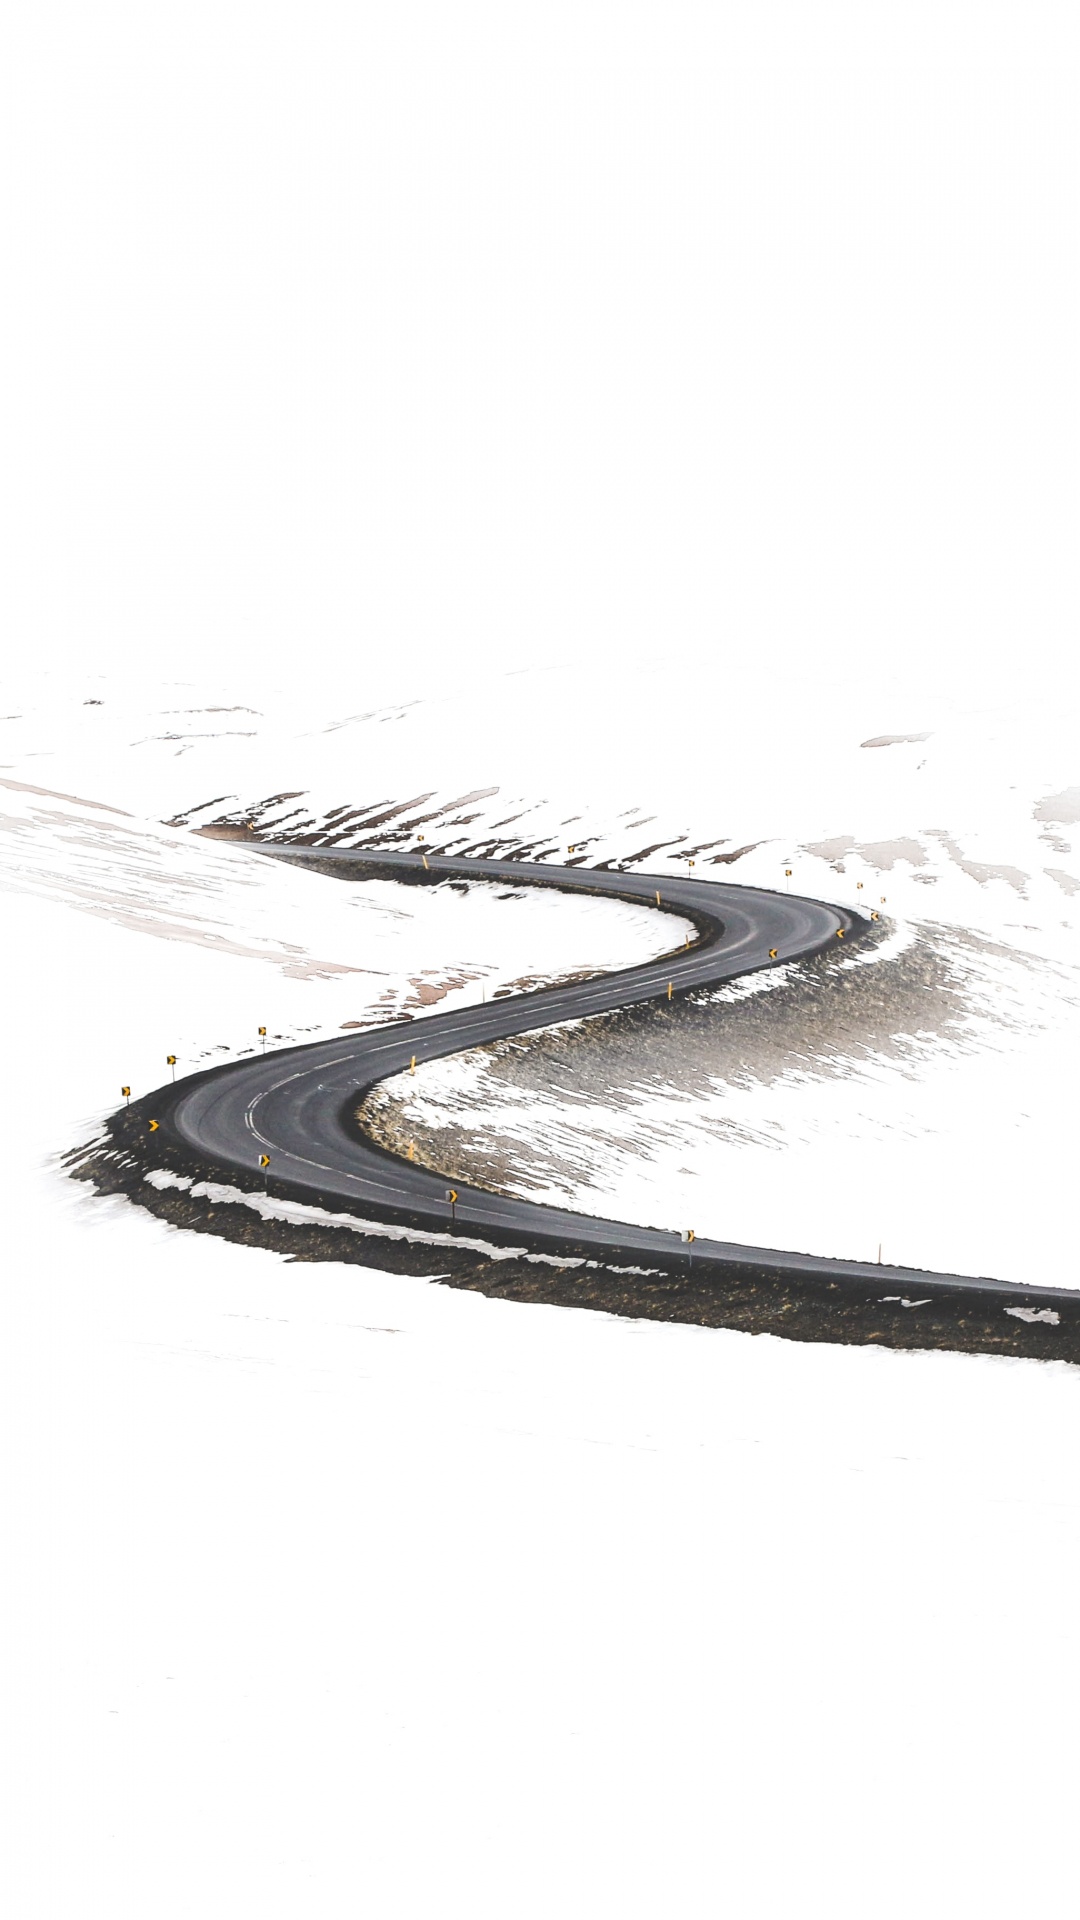 Road, Minimalismus, Zeichnung, Skizze, Design. Wallpaper in 1080x1920 Resolution